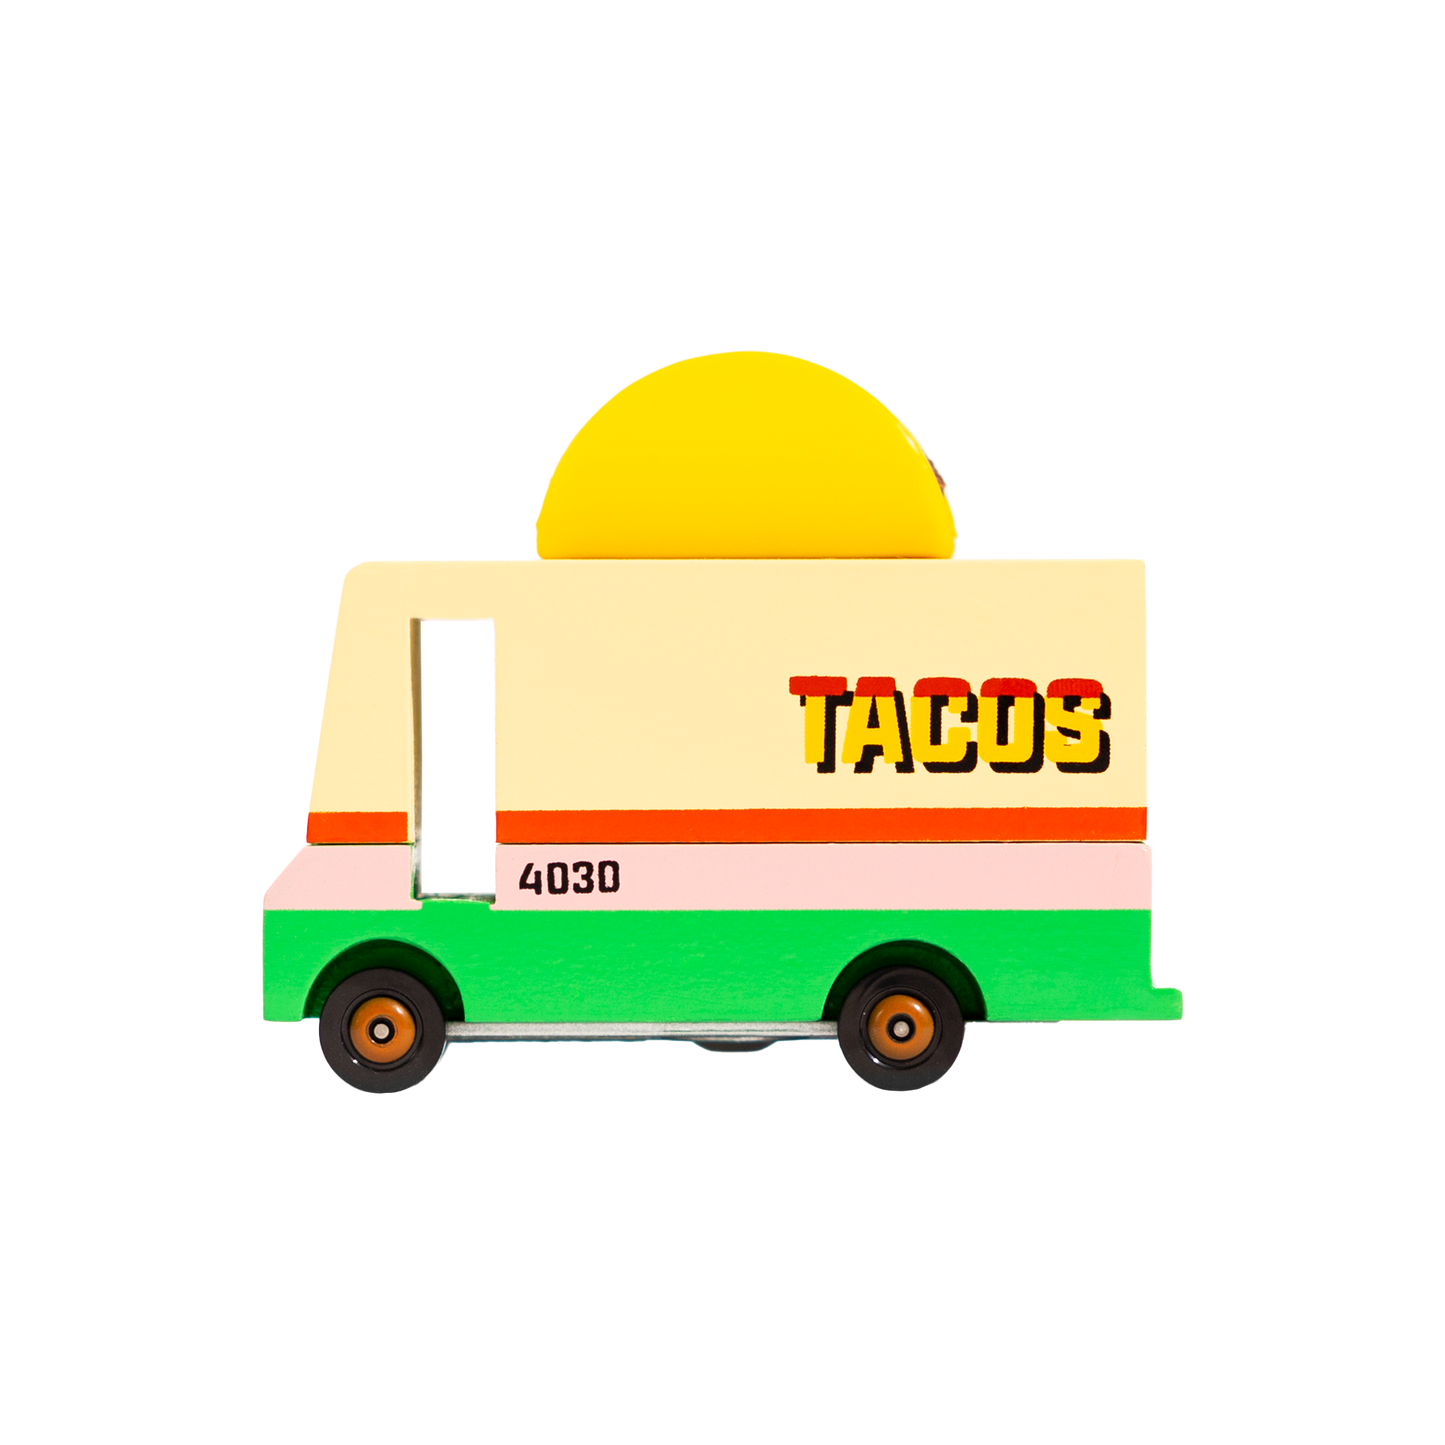 Candylab Taco Van